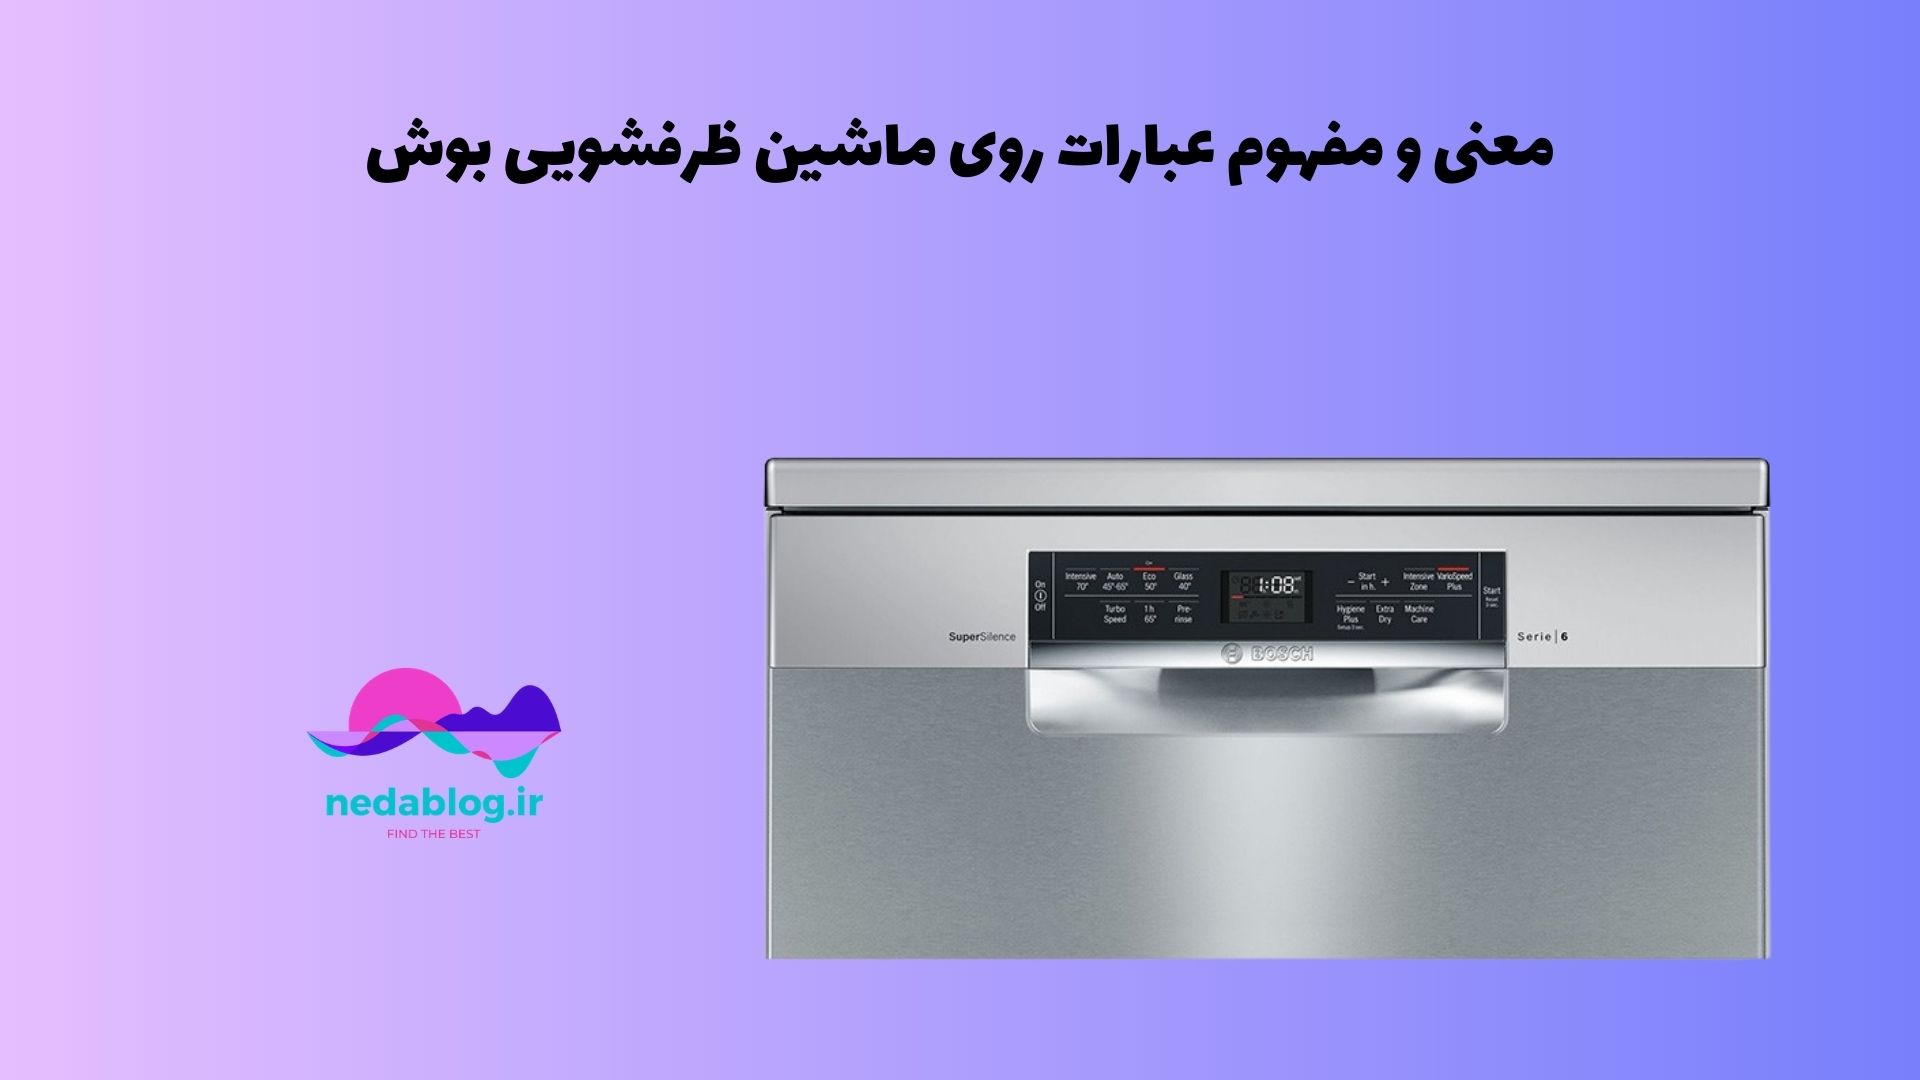 معنی و مفهوم عبارات روی ماشین ظرفشویی بوش